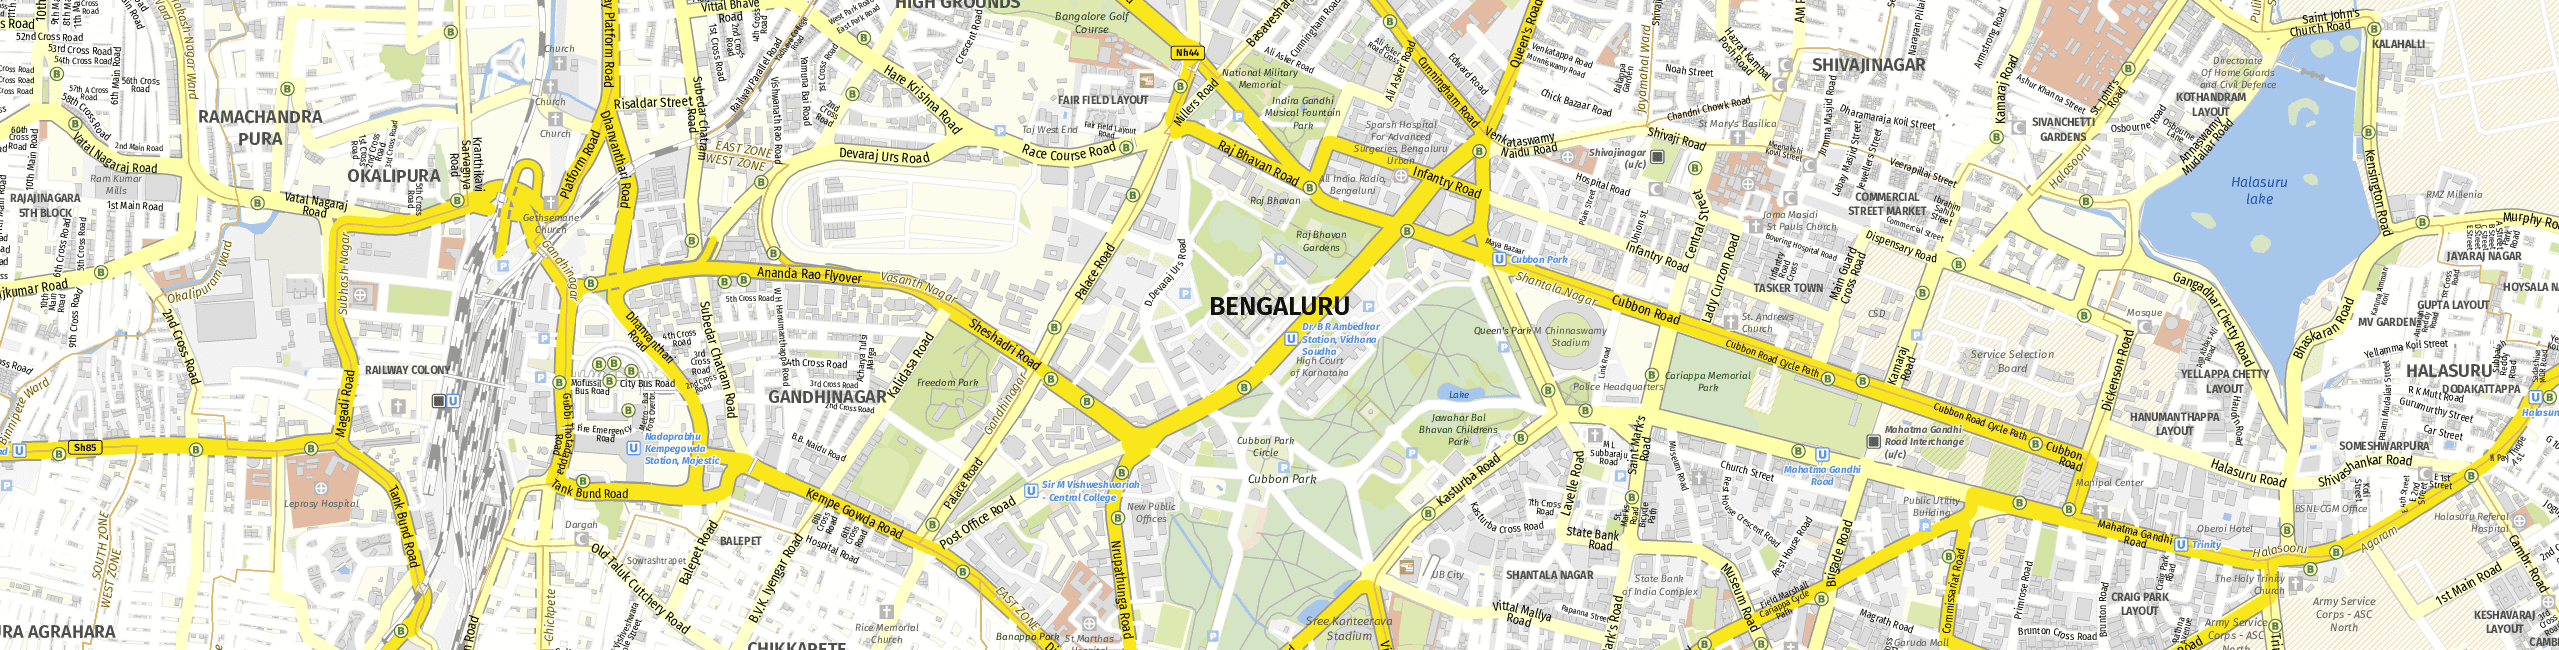 Stadtplan Bangalore zum Downloaden.